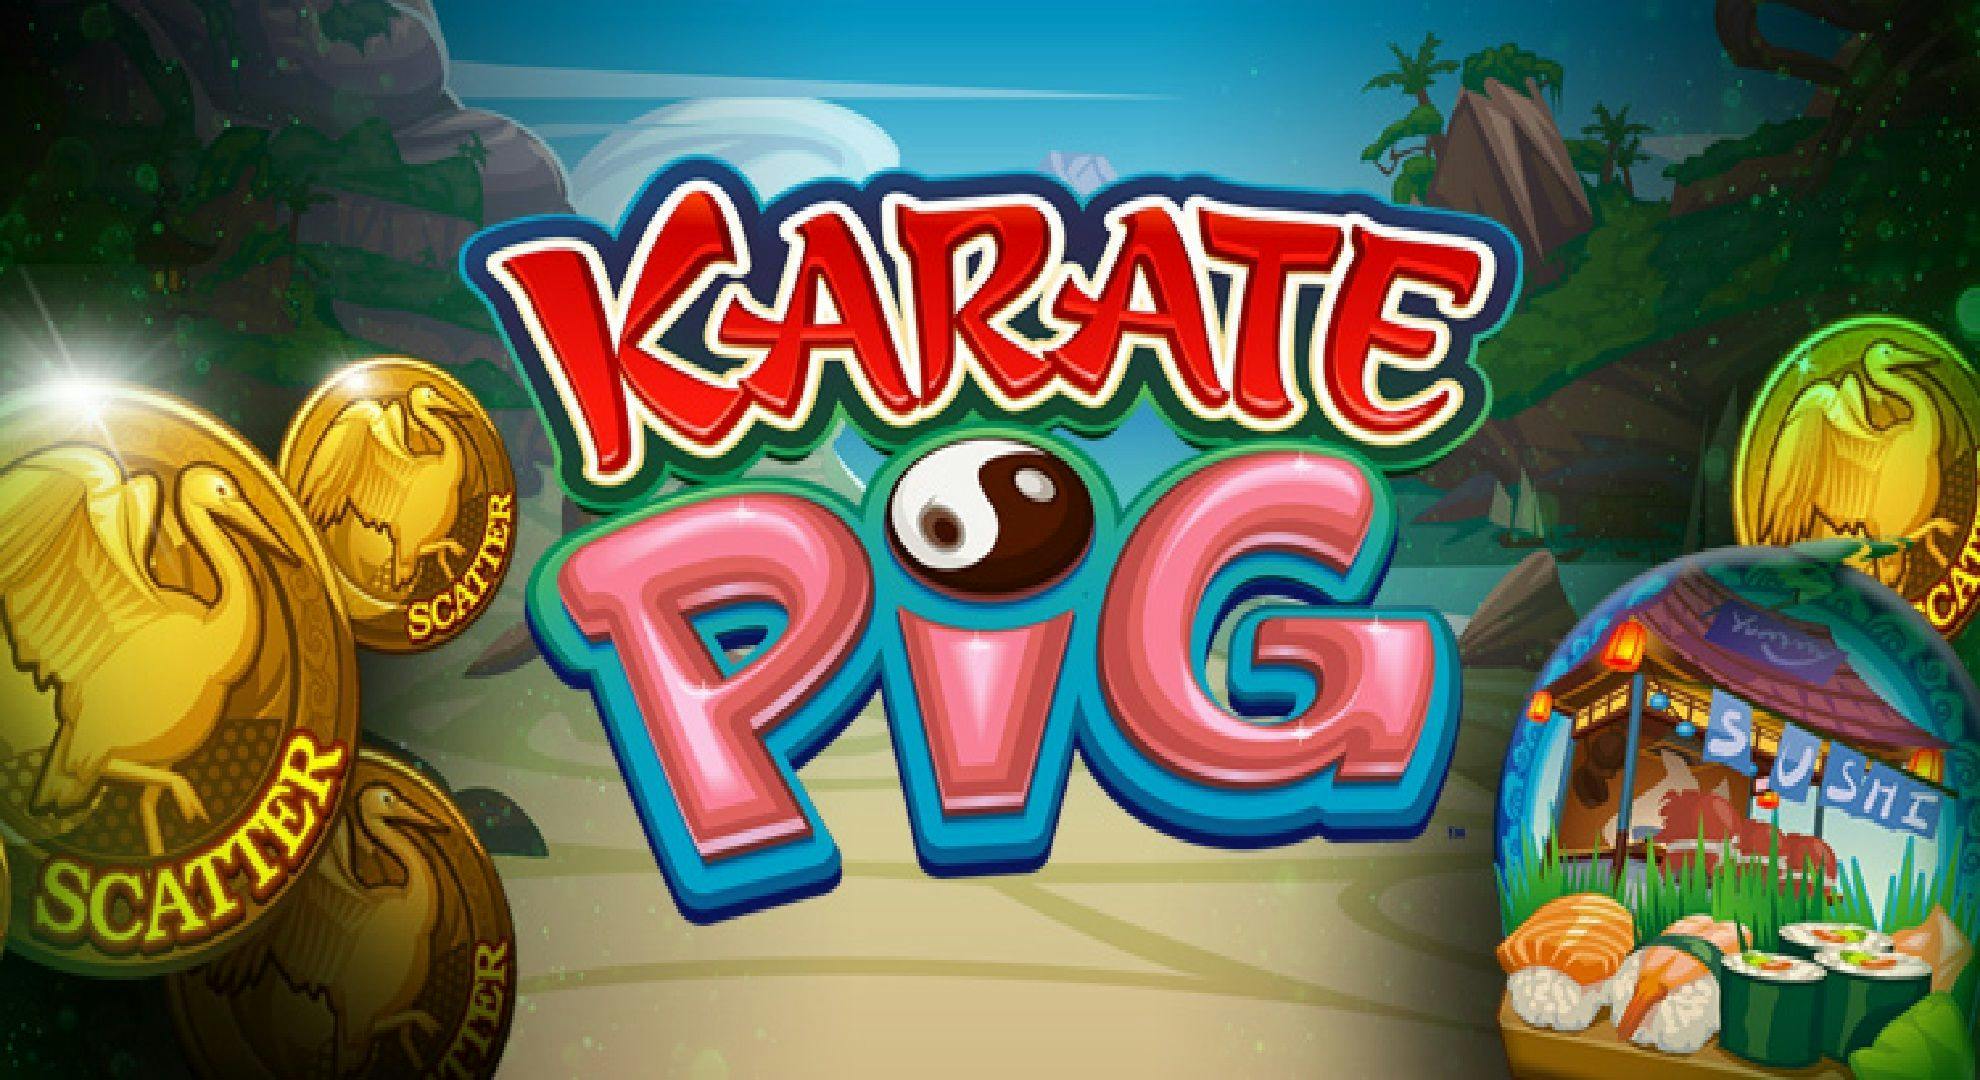 Karate Pig Slot Online Free Play